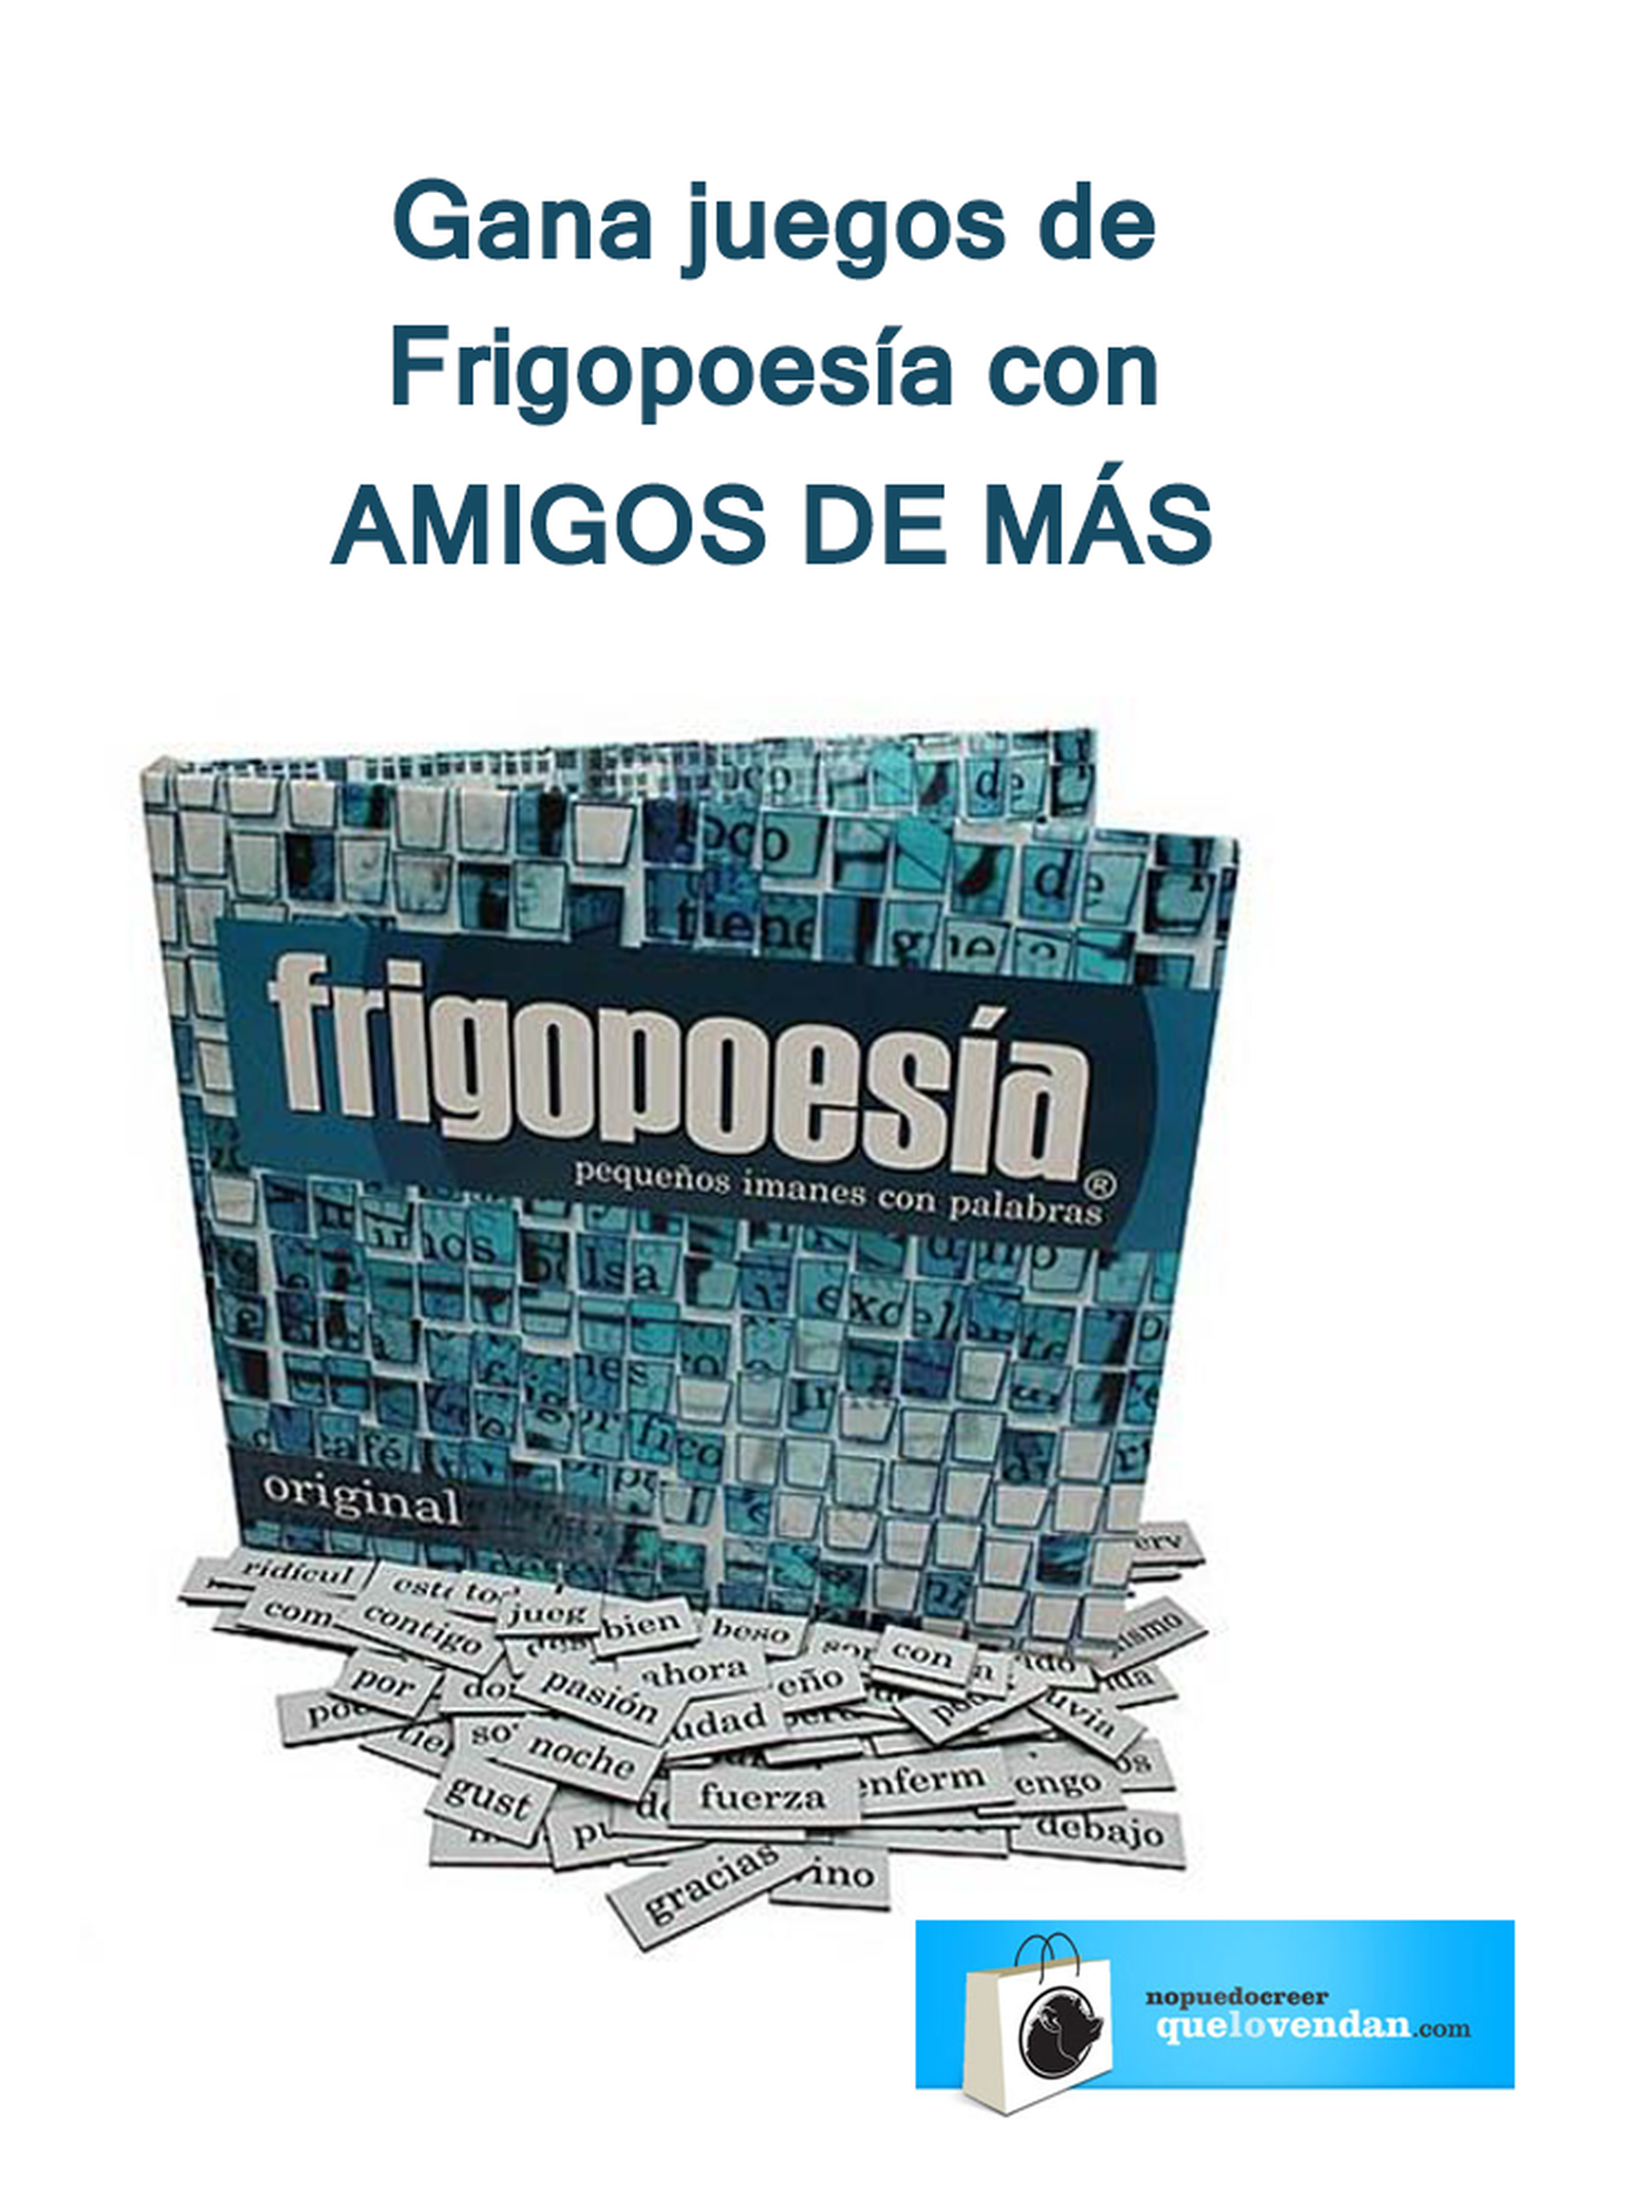 Ganadores concurso AMIGOS DE MÁS: ¡Sorteamos dos juegos de Frigopoesía!